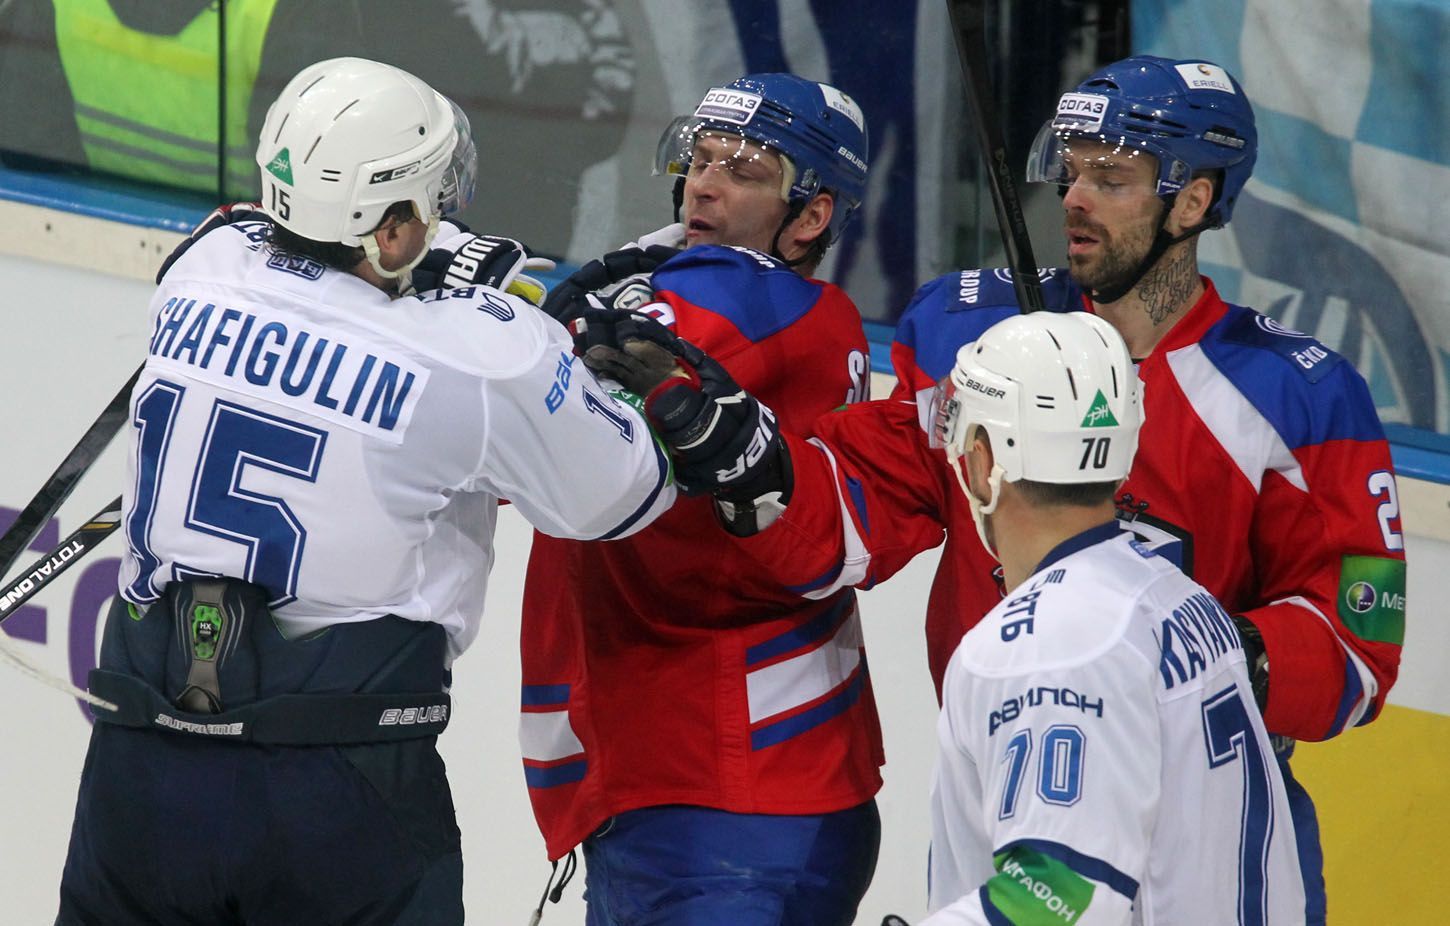 Hokejisté Dynama Moskva Grigorij Šafigulin a Konstantin Kasjančuk brání Michala Sersena a Jakuba Klepiše v utkání KHL 2012/13 proti Lvu Praha.